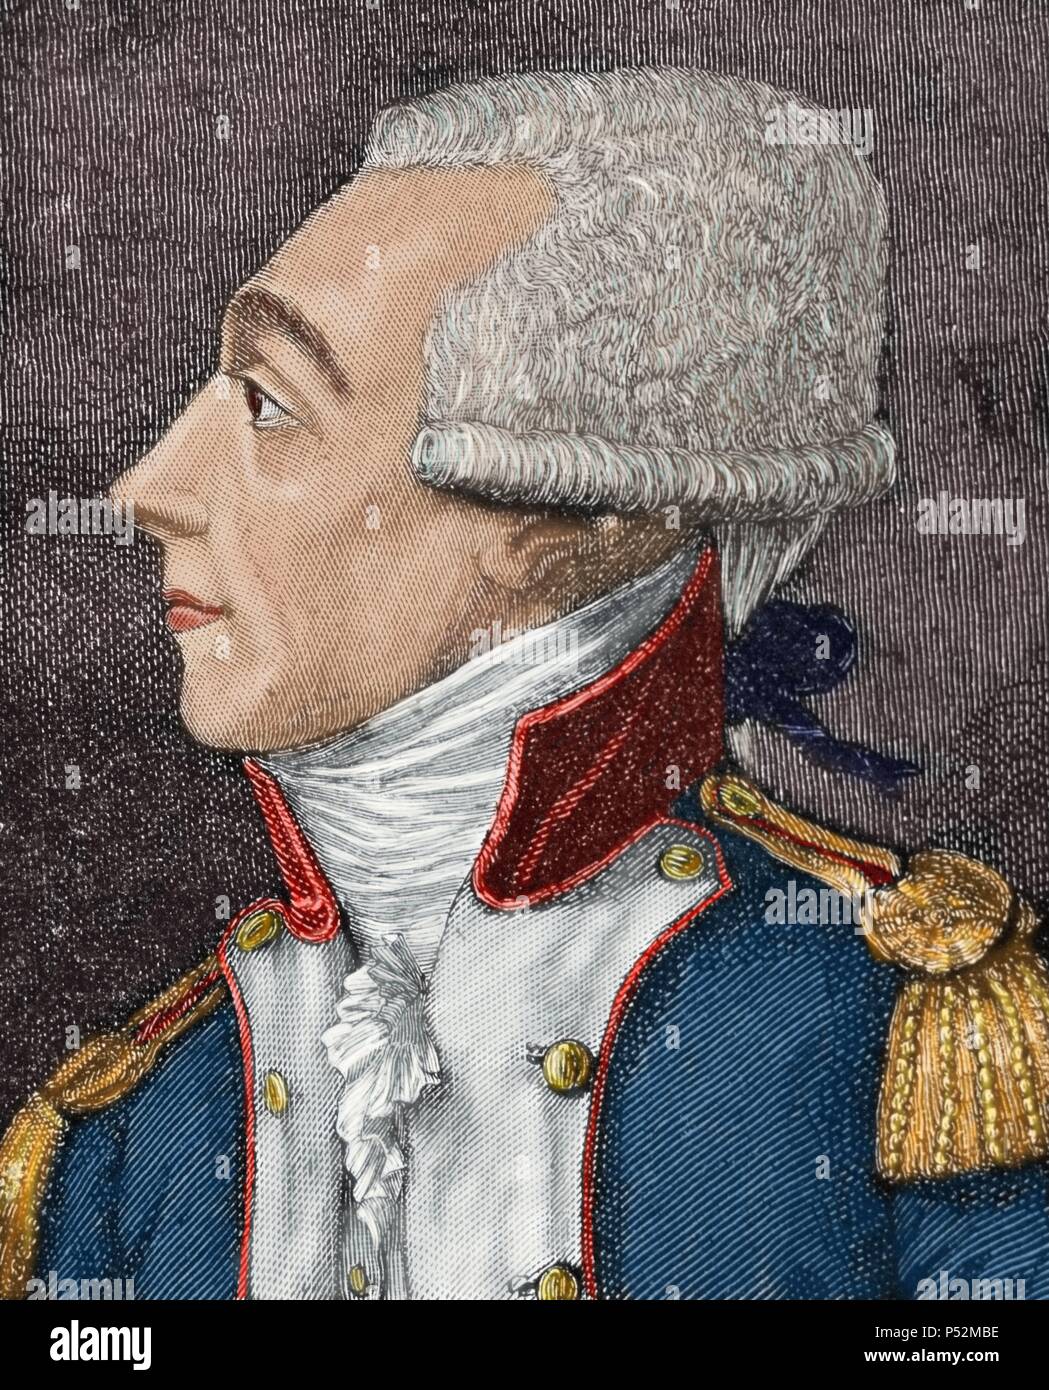 Marie-Joseph Paul Yves Roch Gilbert du Motier, Marquis de La Fayette (1757-1834), connu simplement comme Lafayette. Aristocrate français et officier militaire. Lafayette est un général de la guerre d'Indépendance américaine et un chef de la Garde nationale pendant la Révolution française. Gravure en couleur. 19e siècle. Banque D'Images